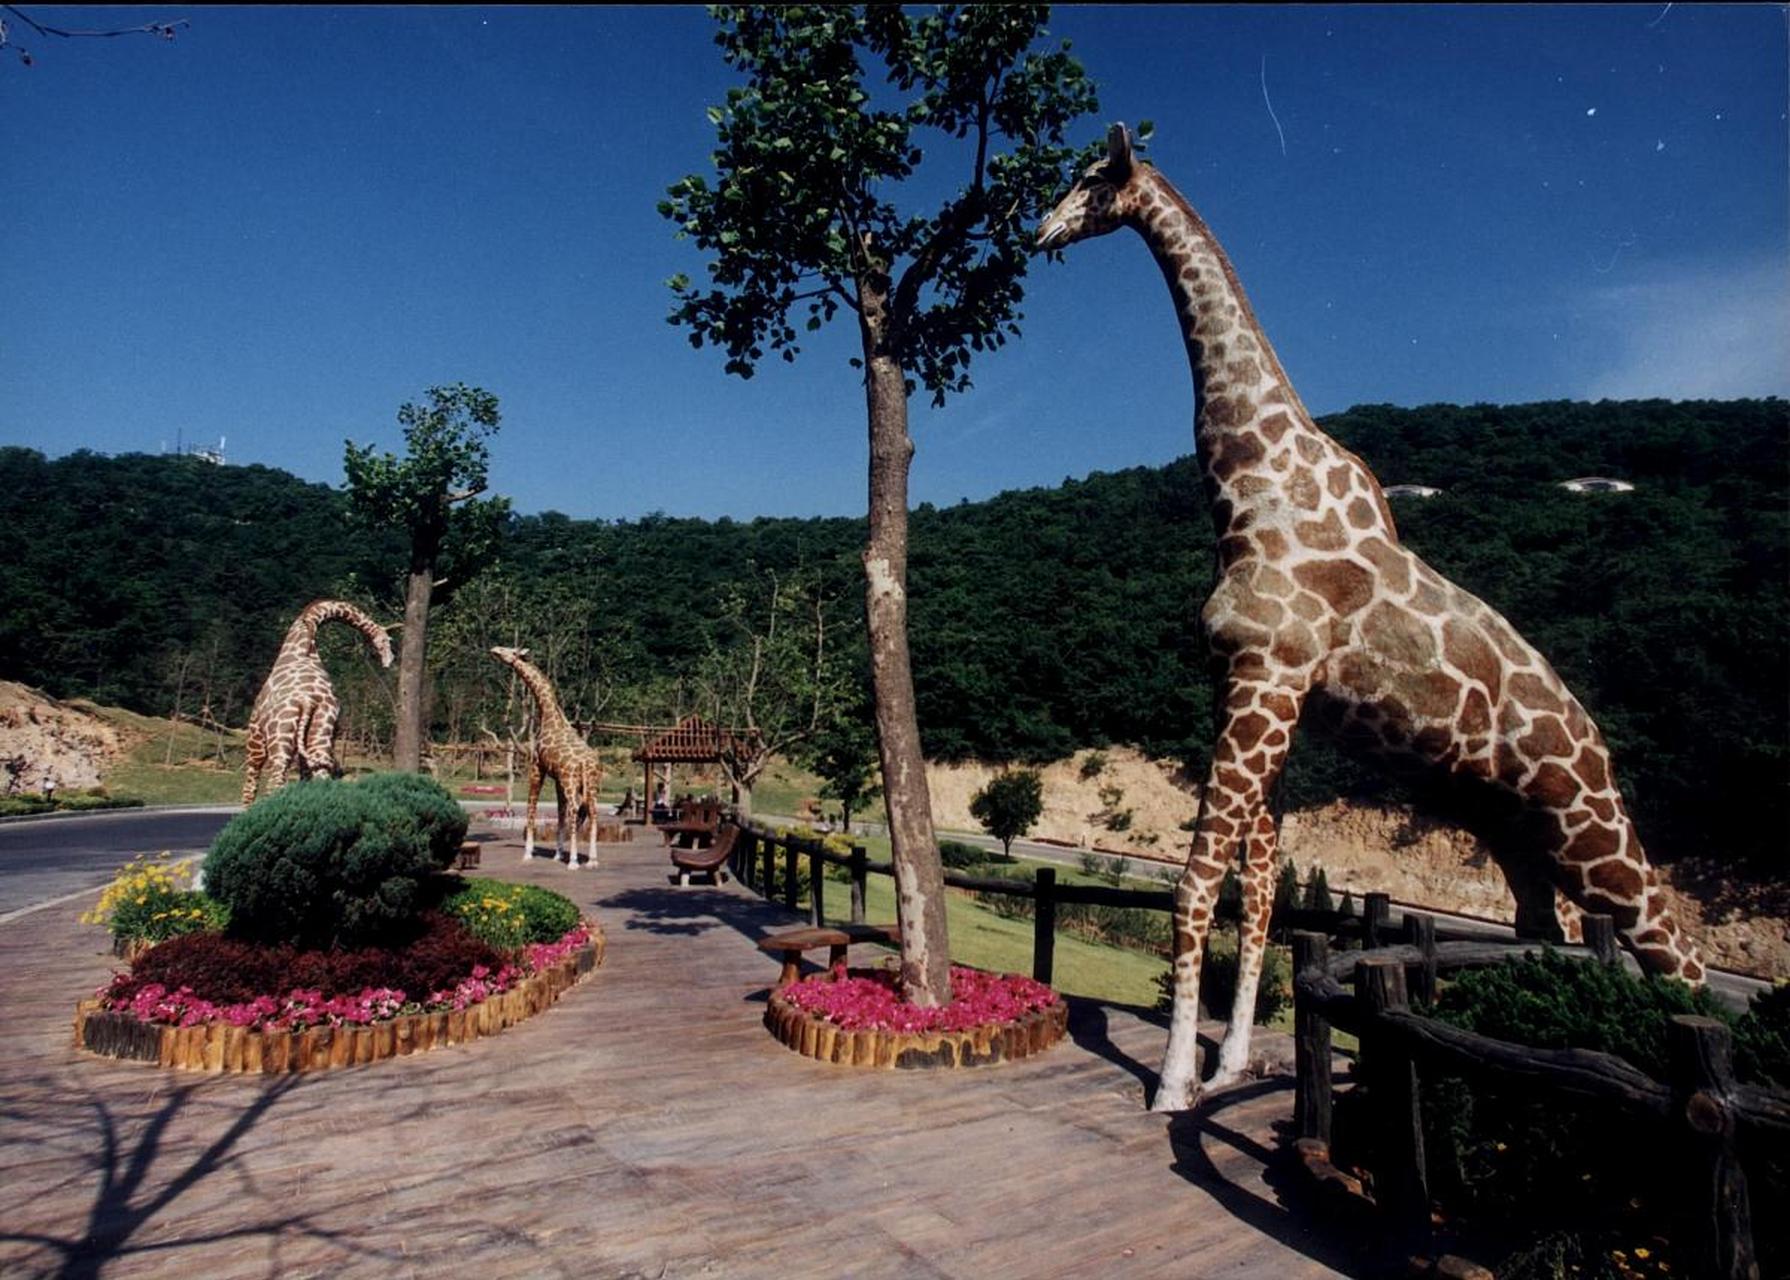 湖南汉寿野生动物园是湖南地区最大的野生动物园,占地2500亩园区内有